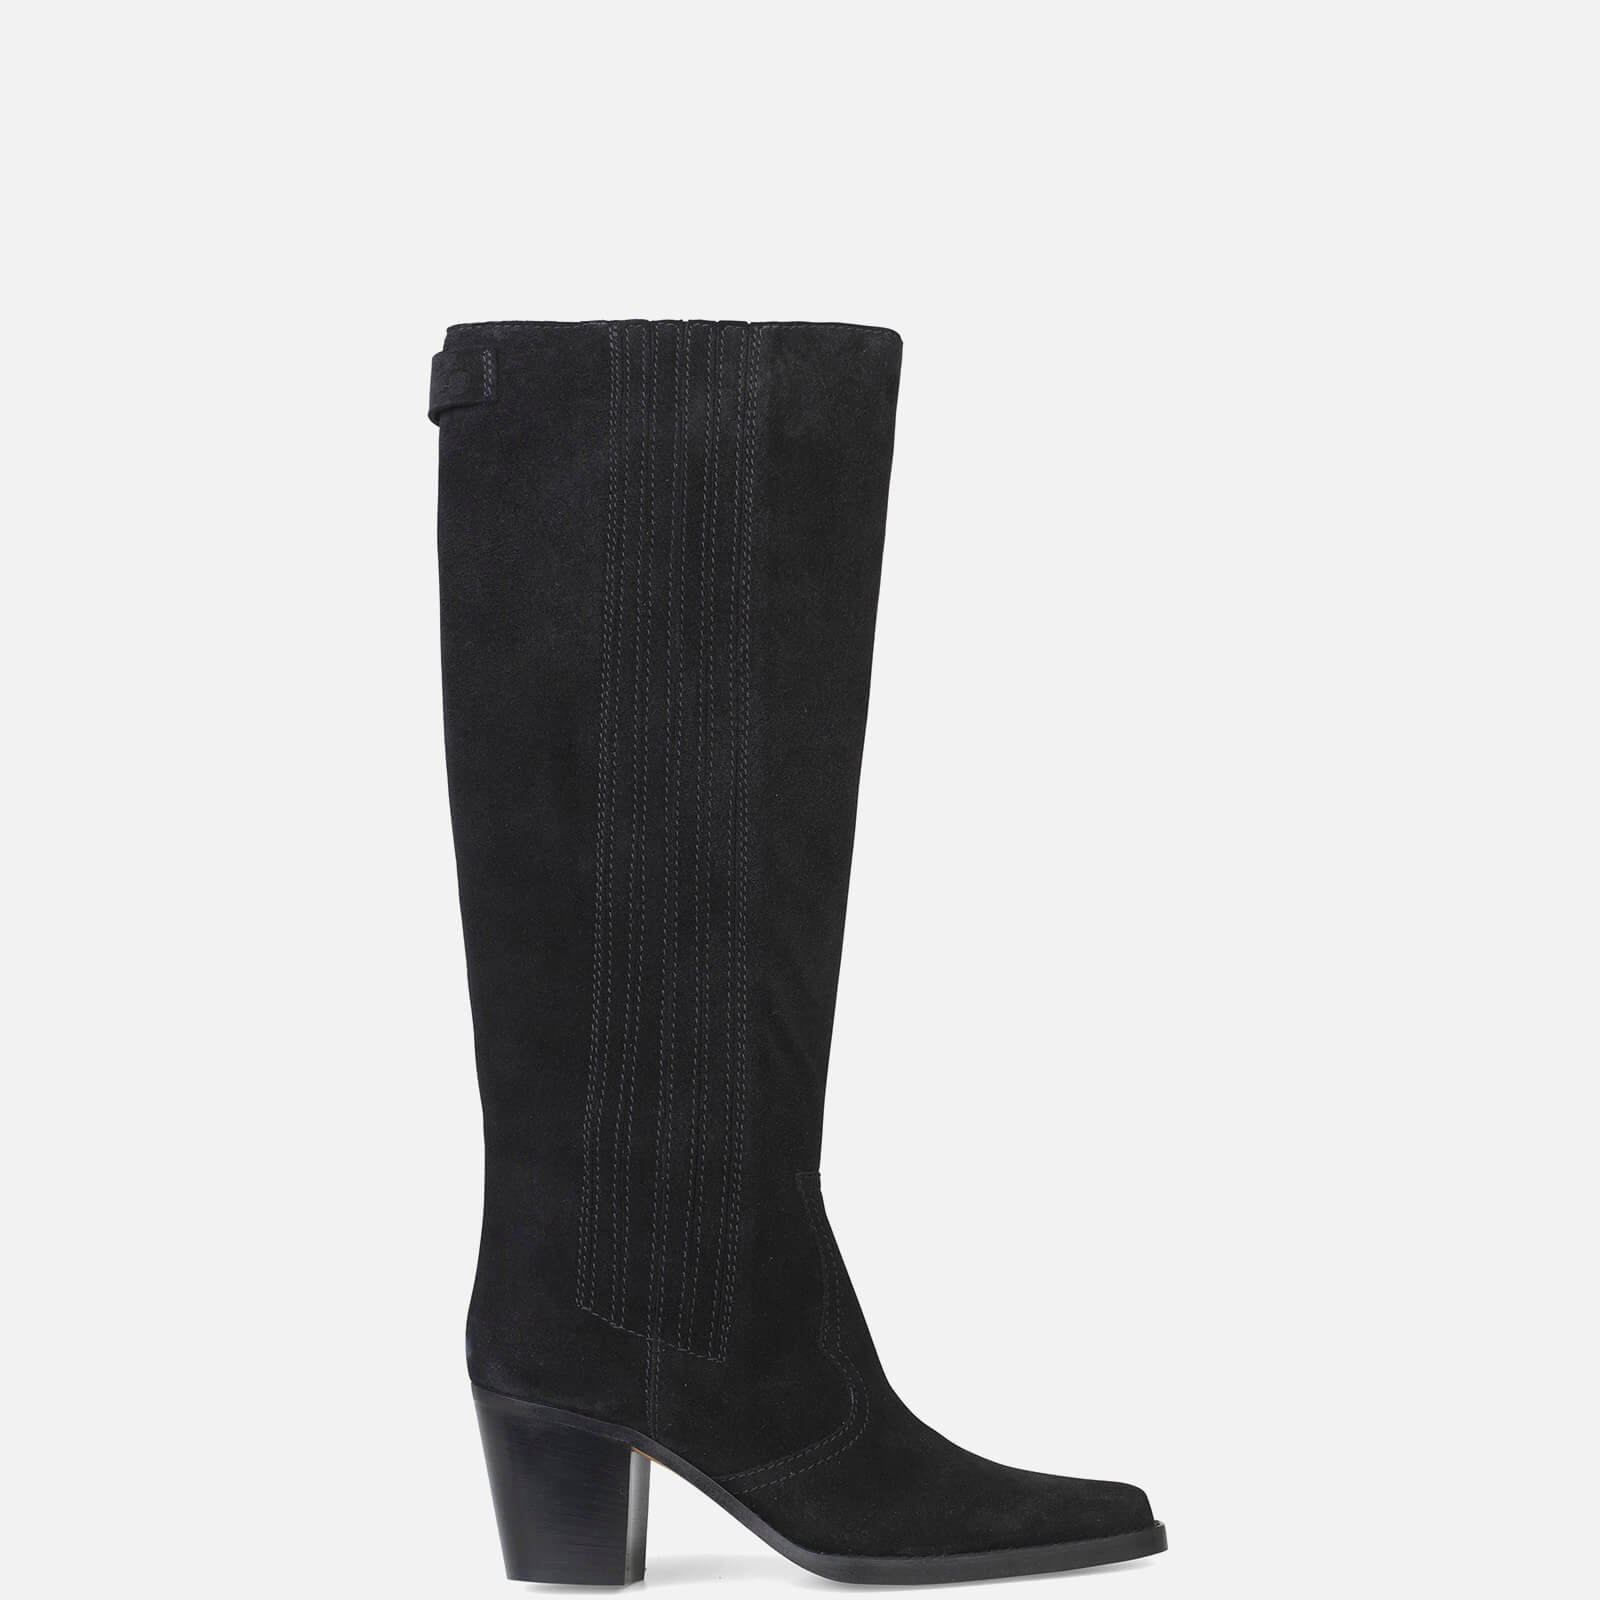 Ganni Women's Suede Knee Boots - Black - Uk 3